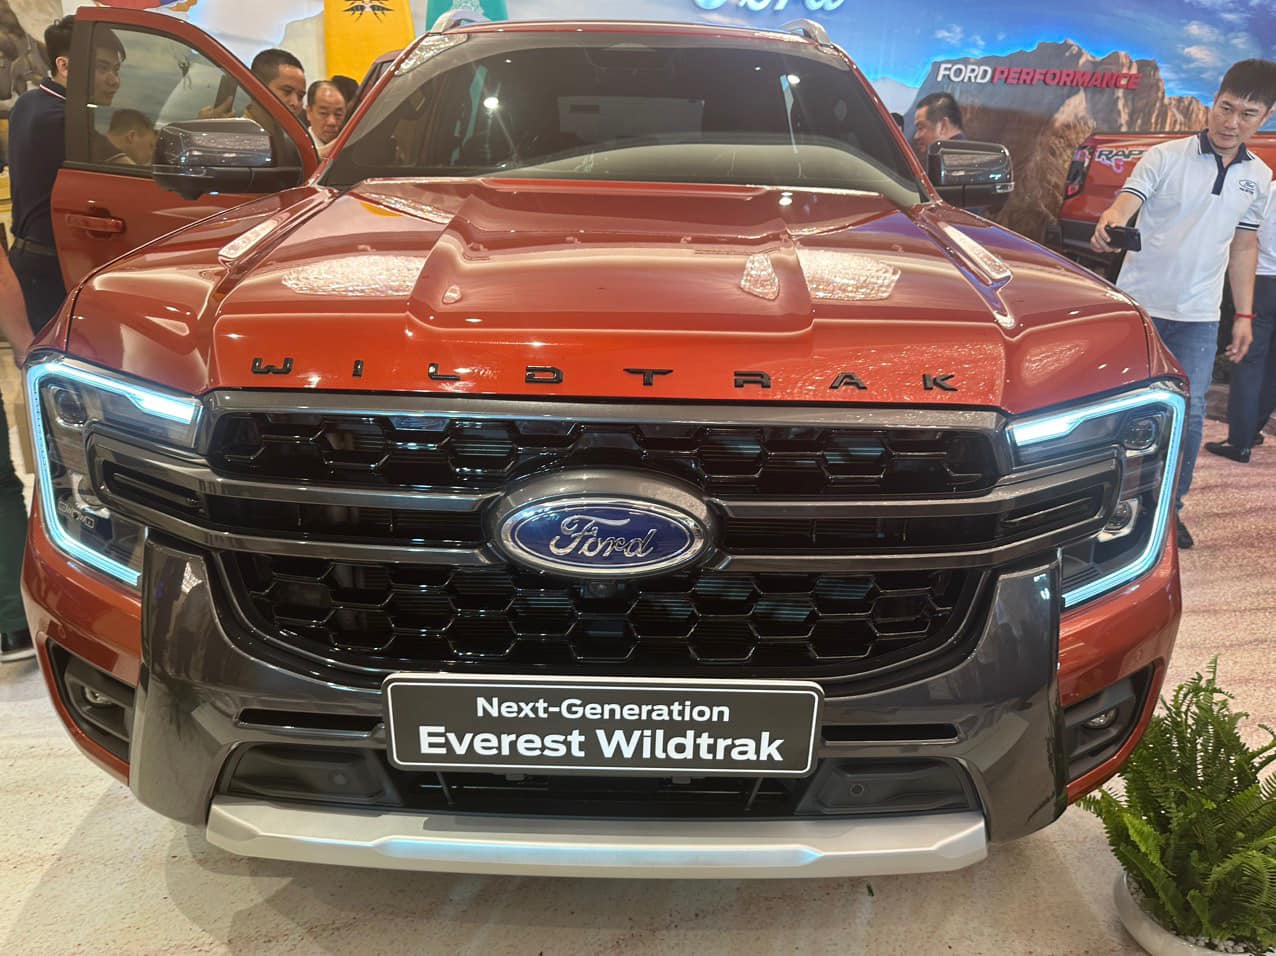 Ford Everest Wildtrak đã về đại lý Việt Nam: Giá 1,5 tỷ đồng, dự kiến giao xe tháng 5, nỗ lực cạnh tranh Santa Fe - Ảnh 6.